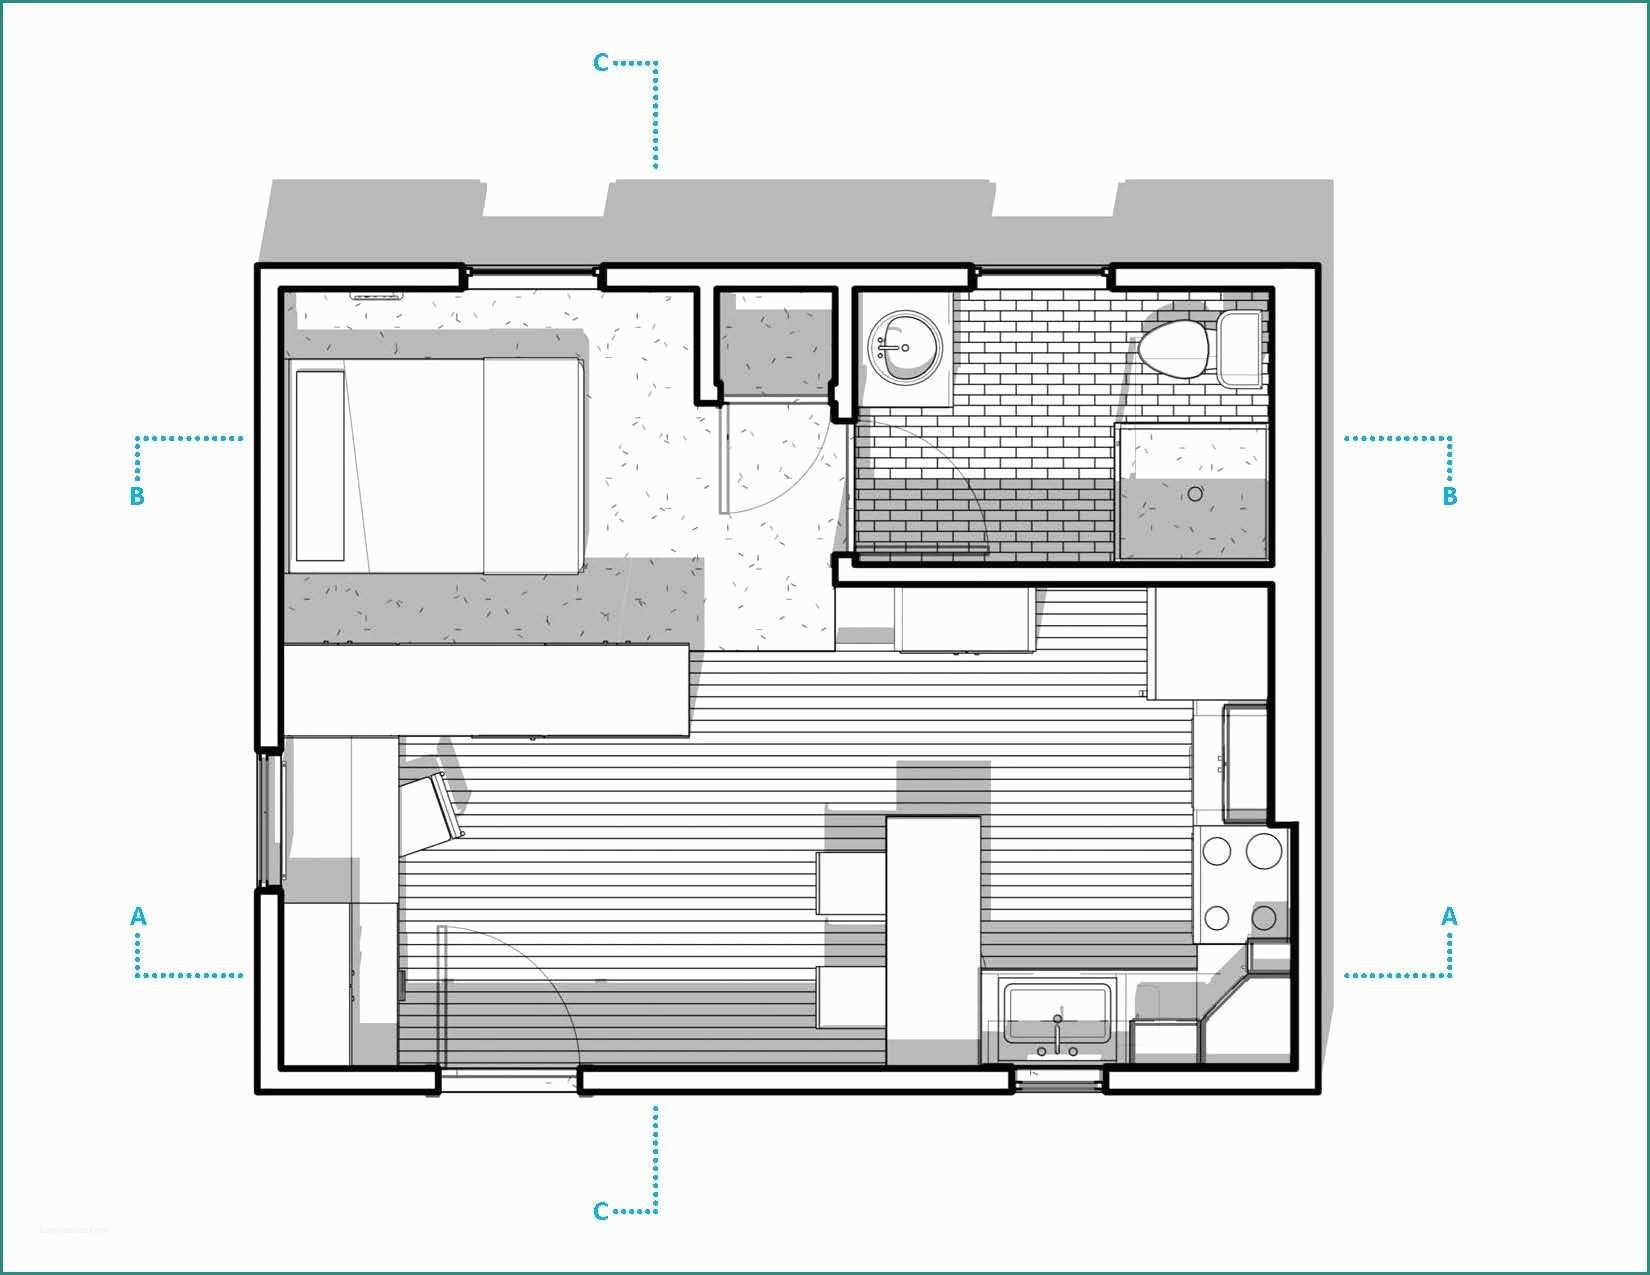 Progetto Appartamento Mq E 300 Sq Ft Apartment Layout